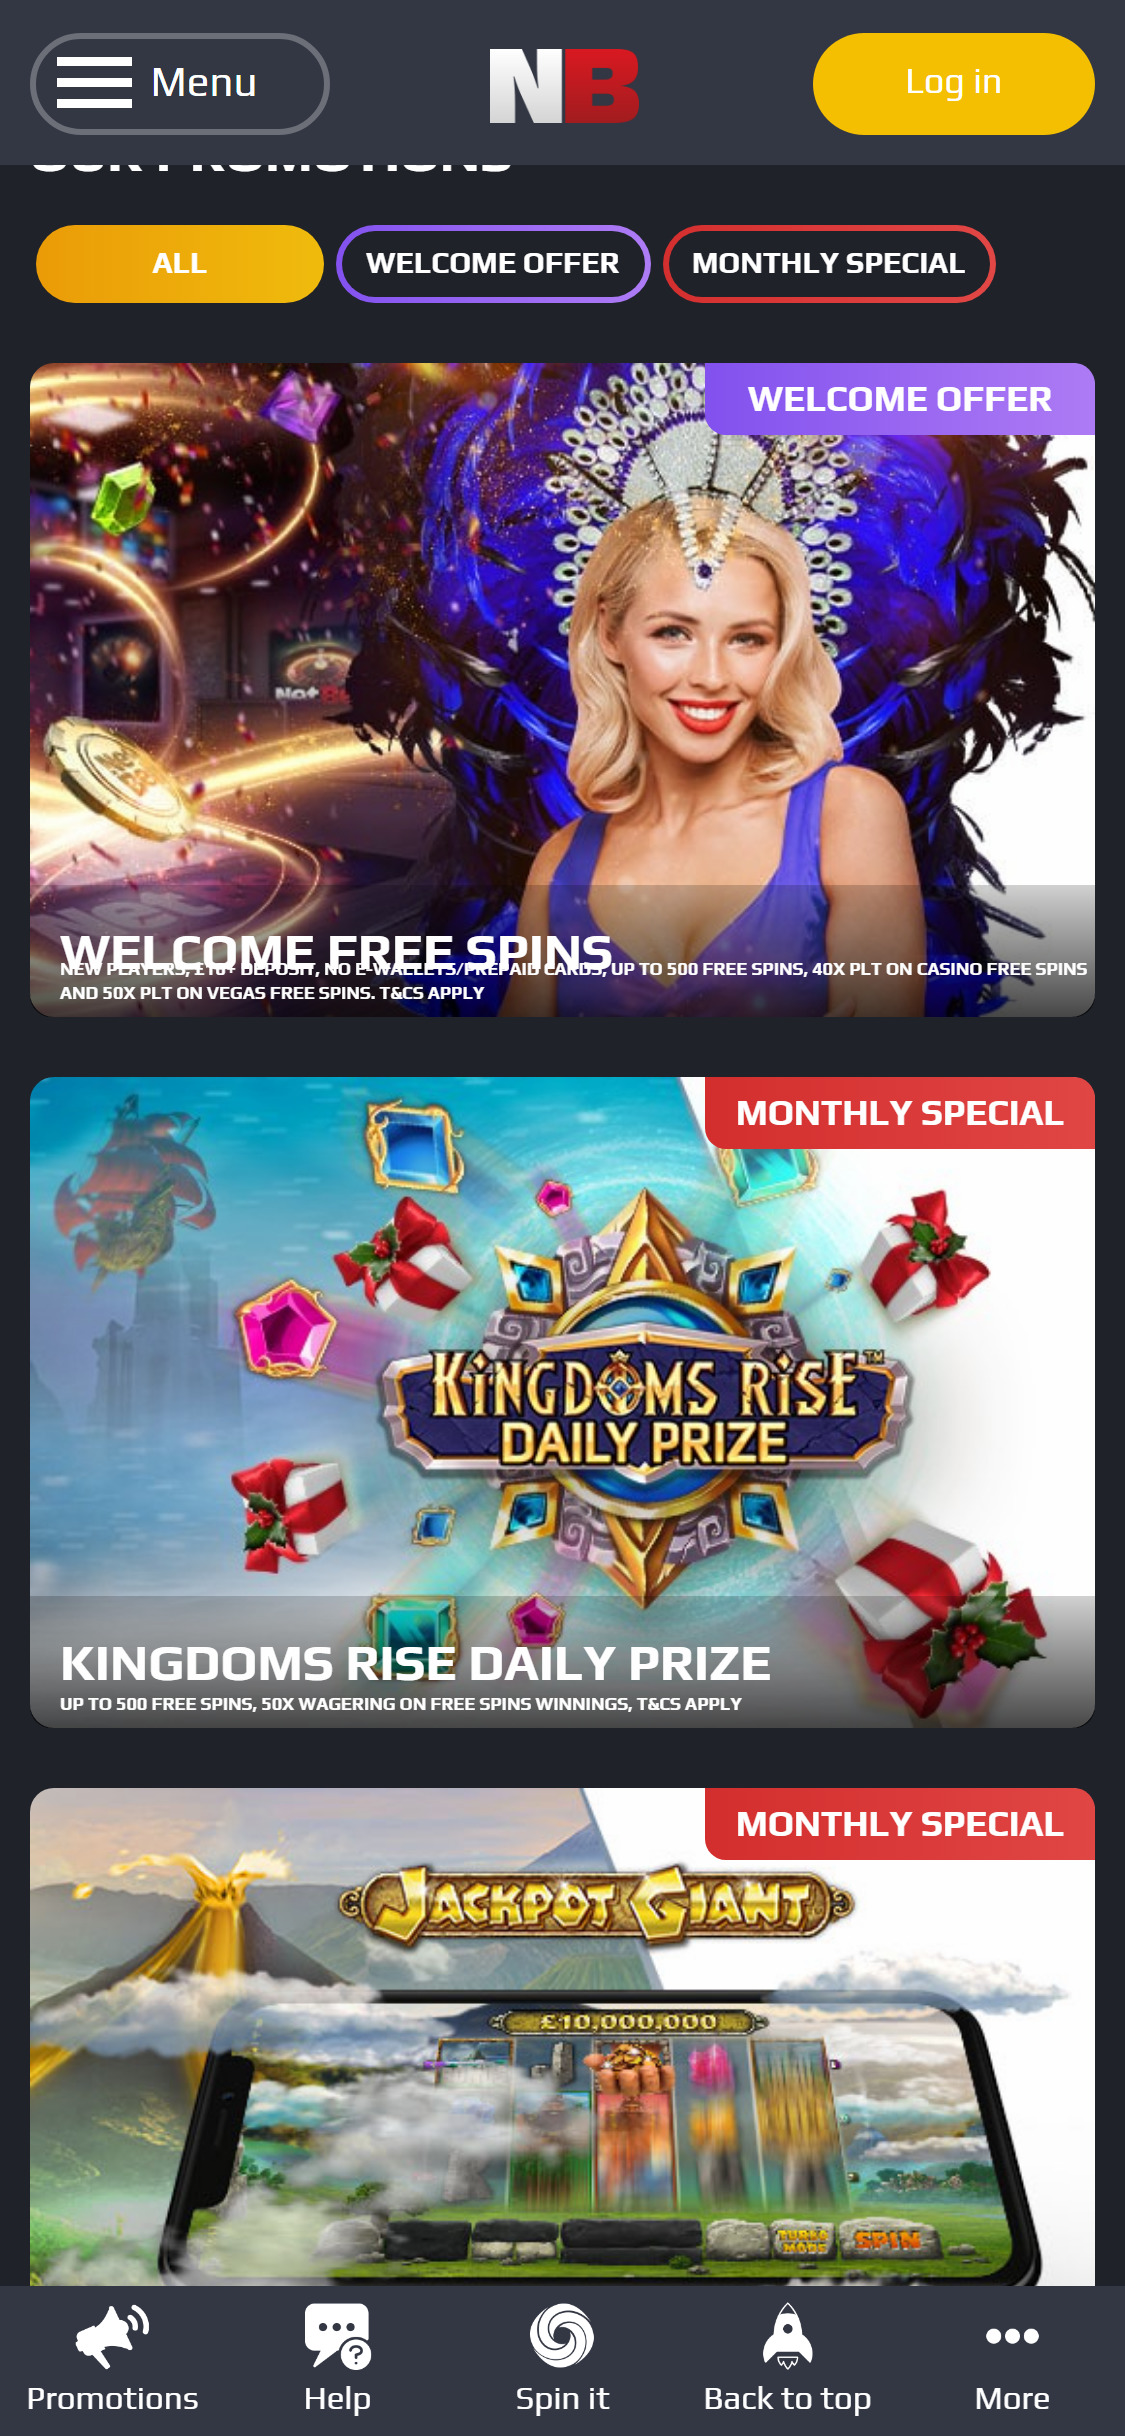 NetBet Vegas Casino UK Mobile No Deposit Bonus Review